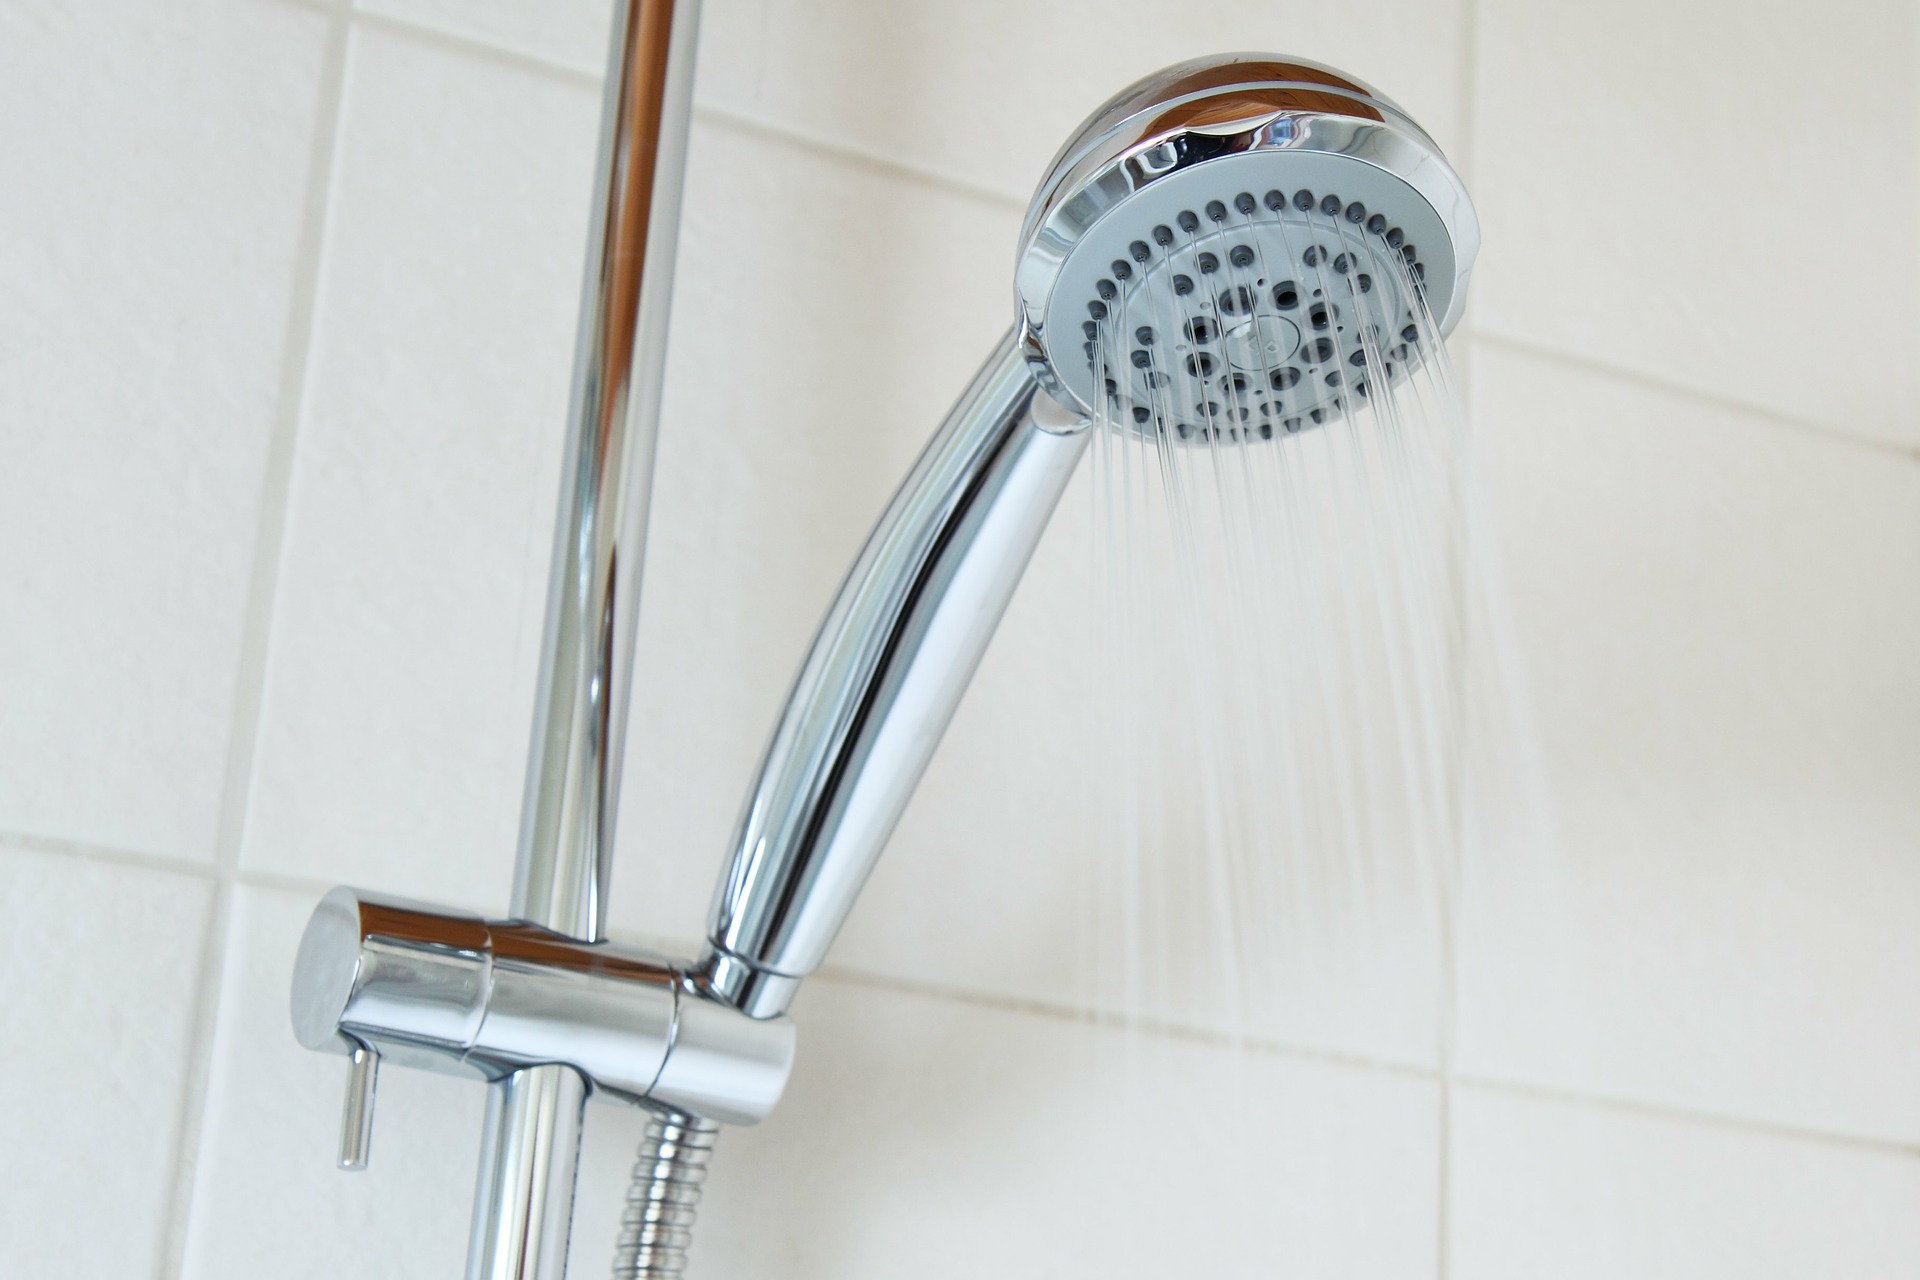 Чистюлю-эгоистку из Самары суд обязал прекратить принимать душ